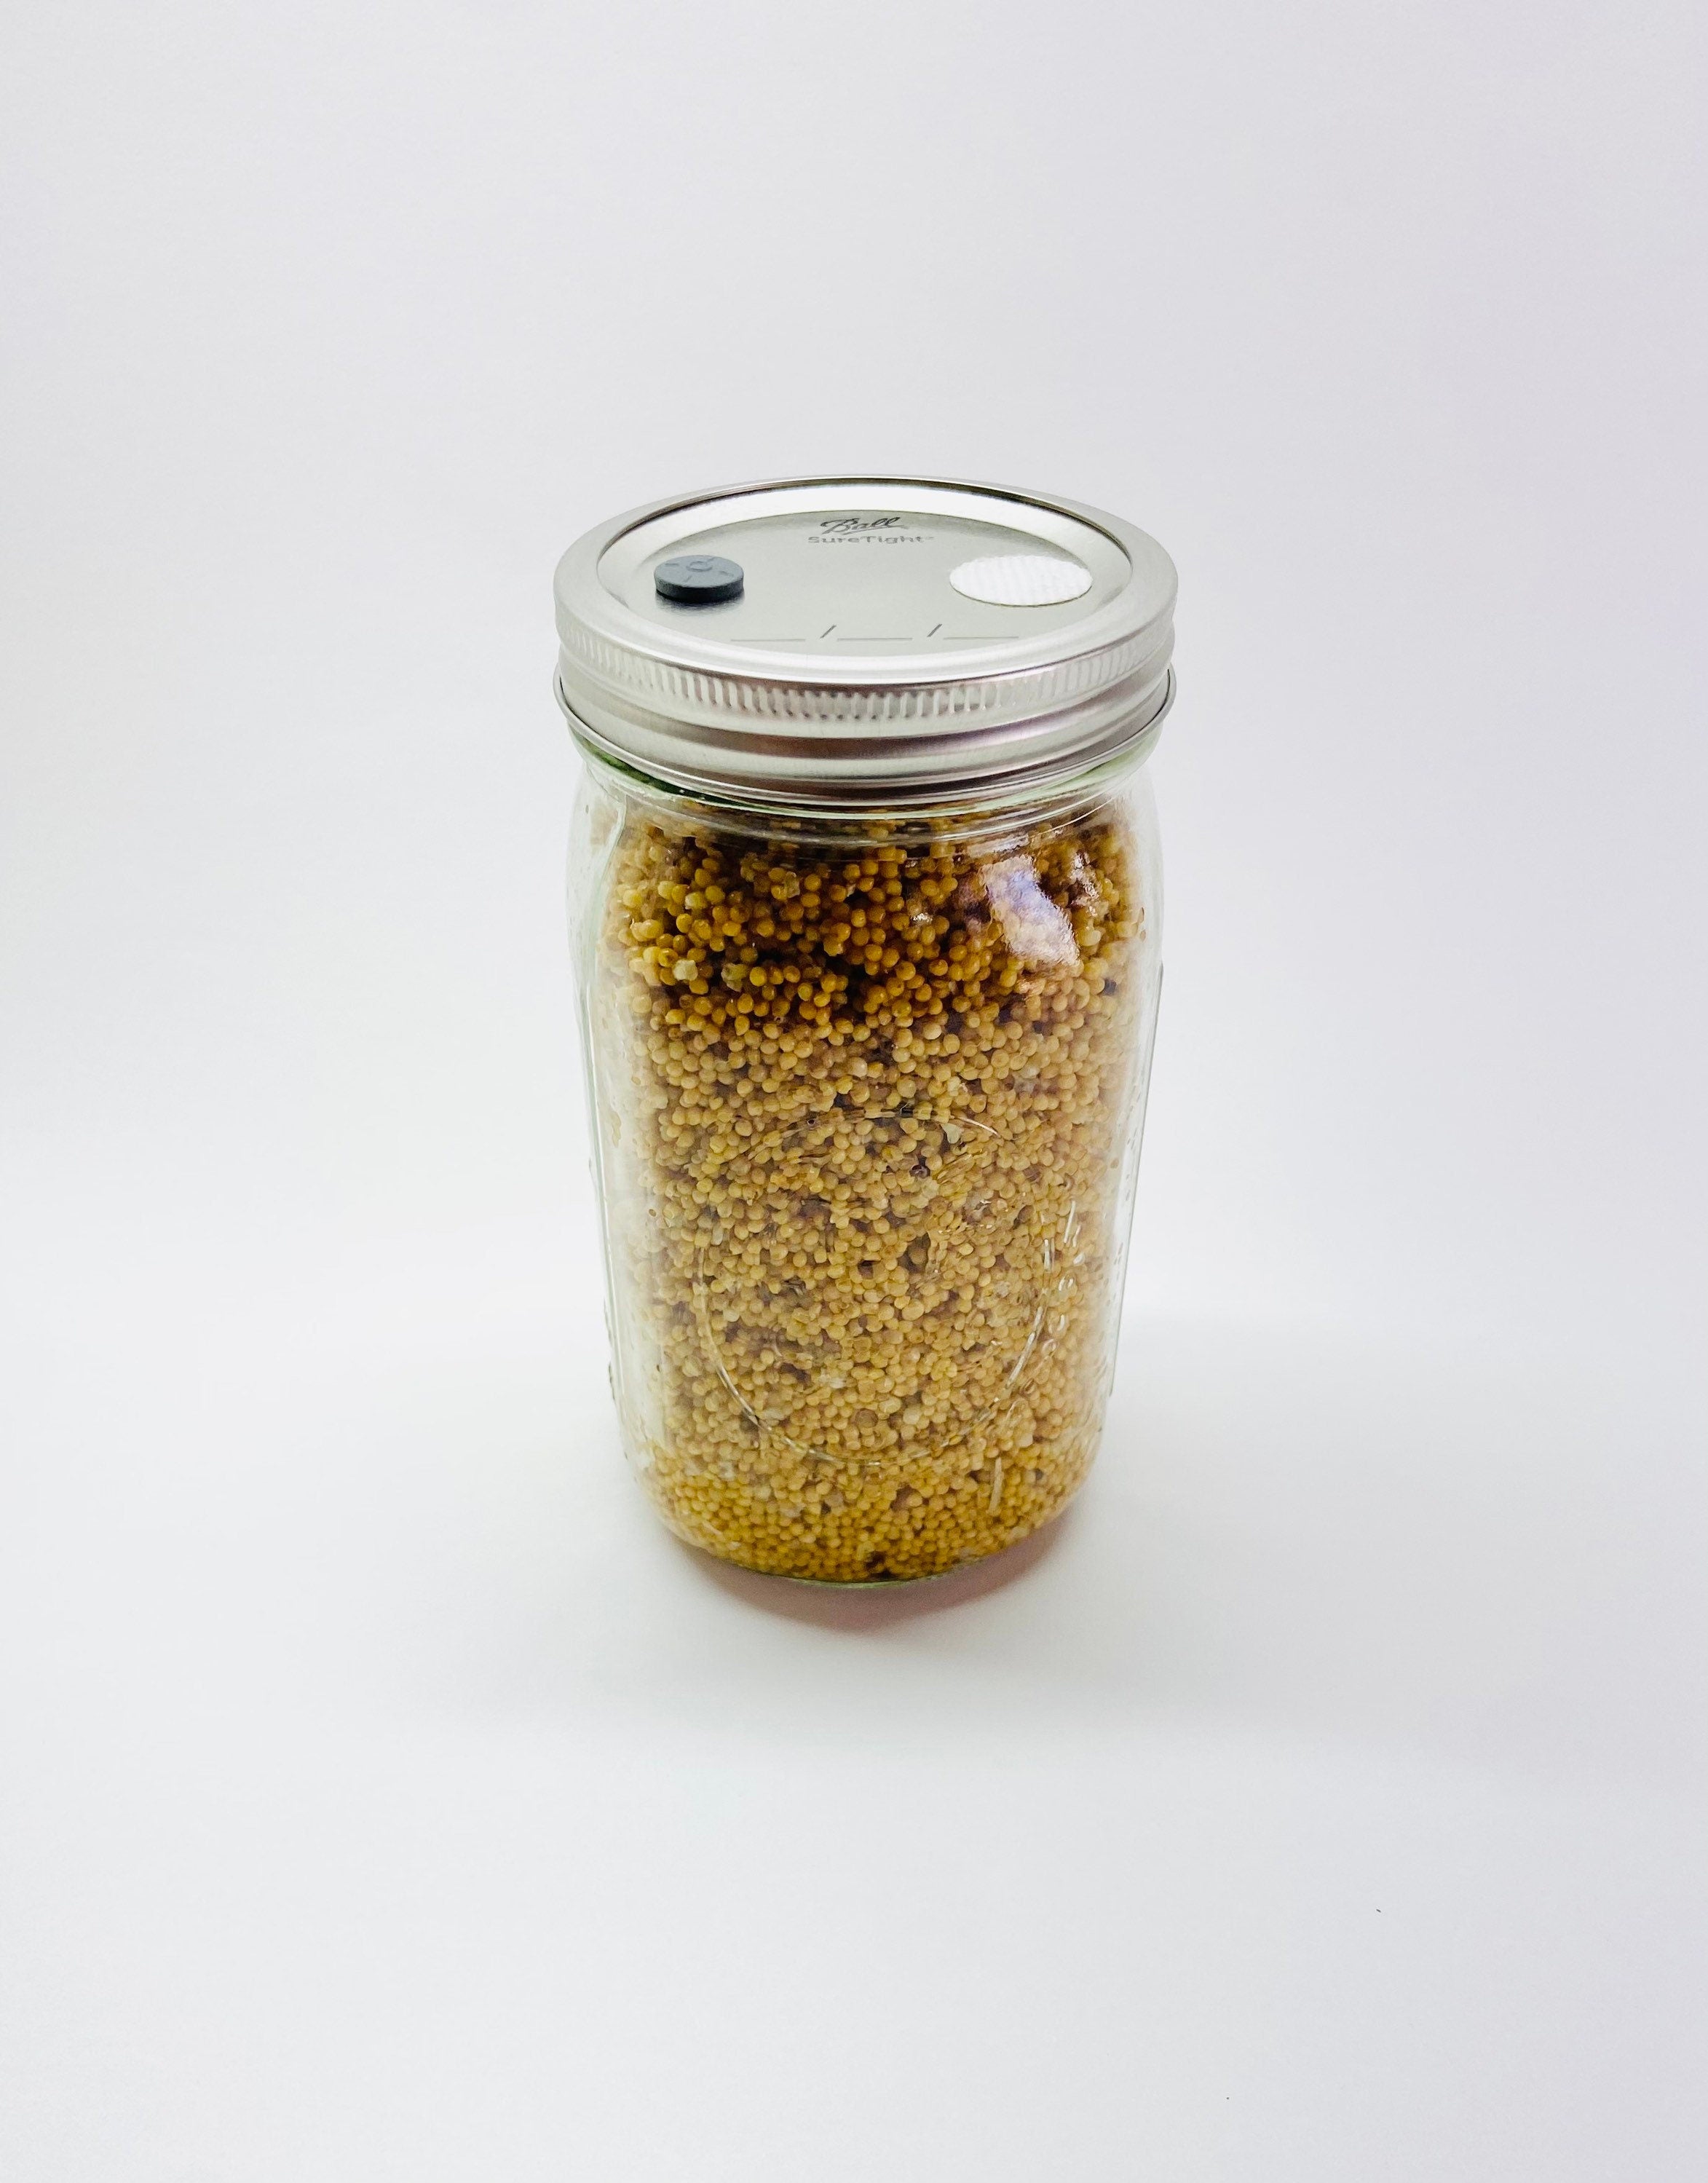 Sterilized Rye Berry Quart Jar Ready For Inoculation